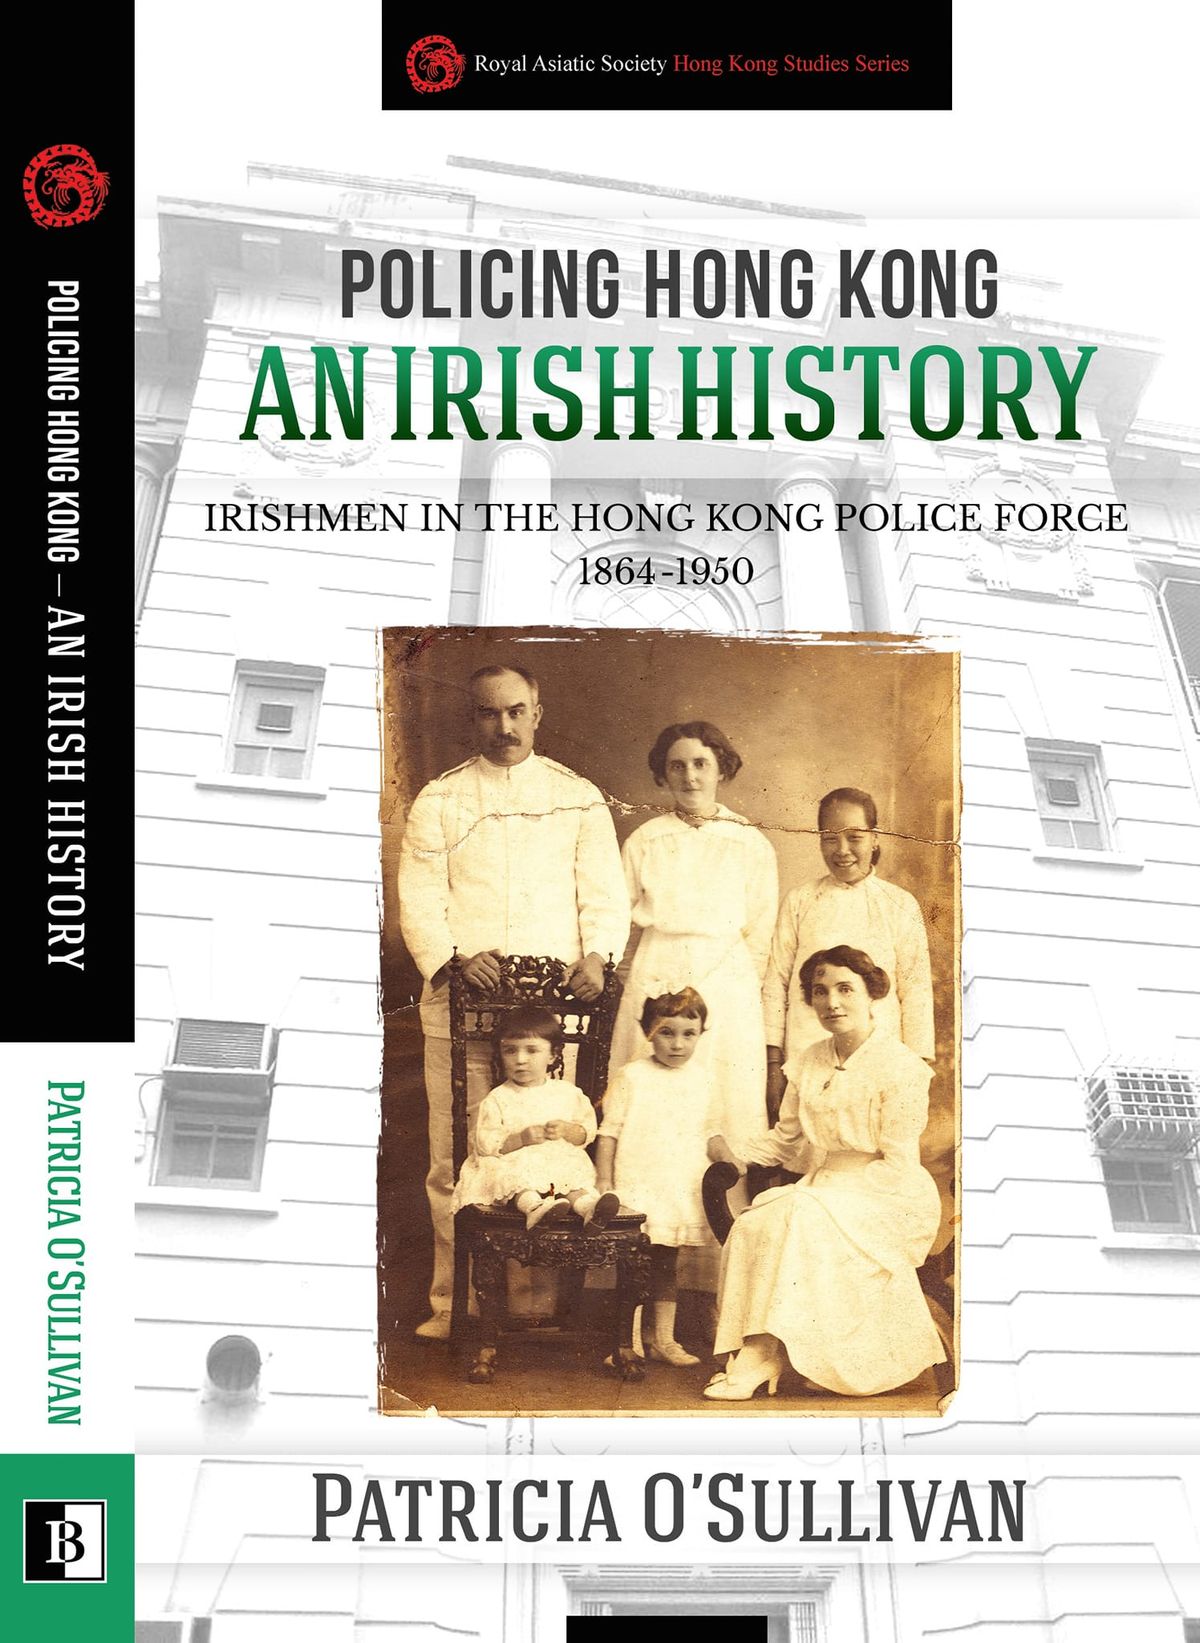 Irishmen in the Hong Kong Police Force 1864-1950